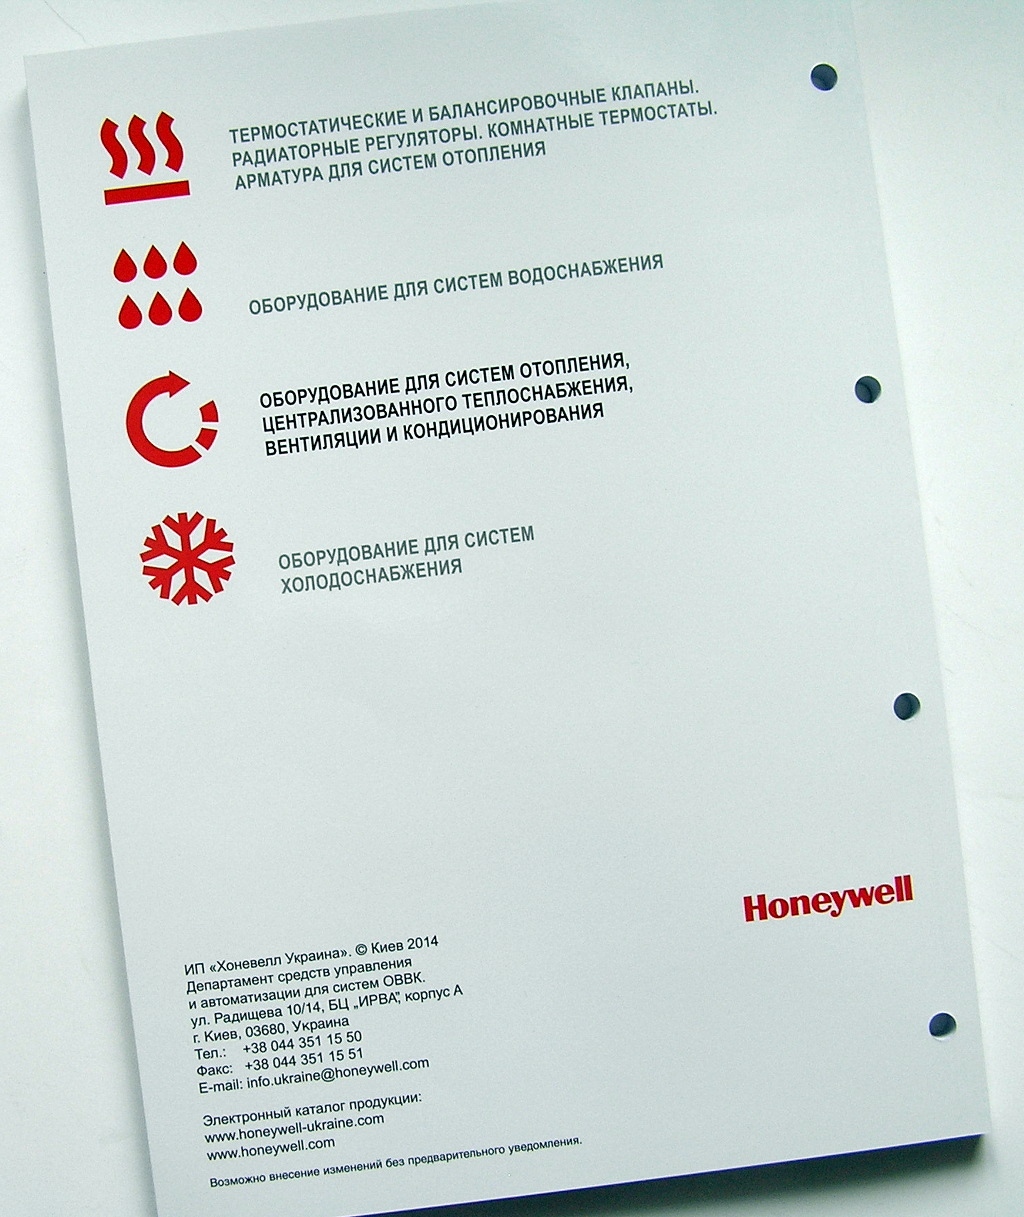 Печать каталогов «Honeywell. Оборудование для систем отопления». Полиграфия типографии Макрос, изготовление каталогов, спецификация 964969-7